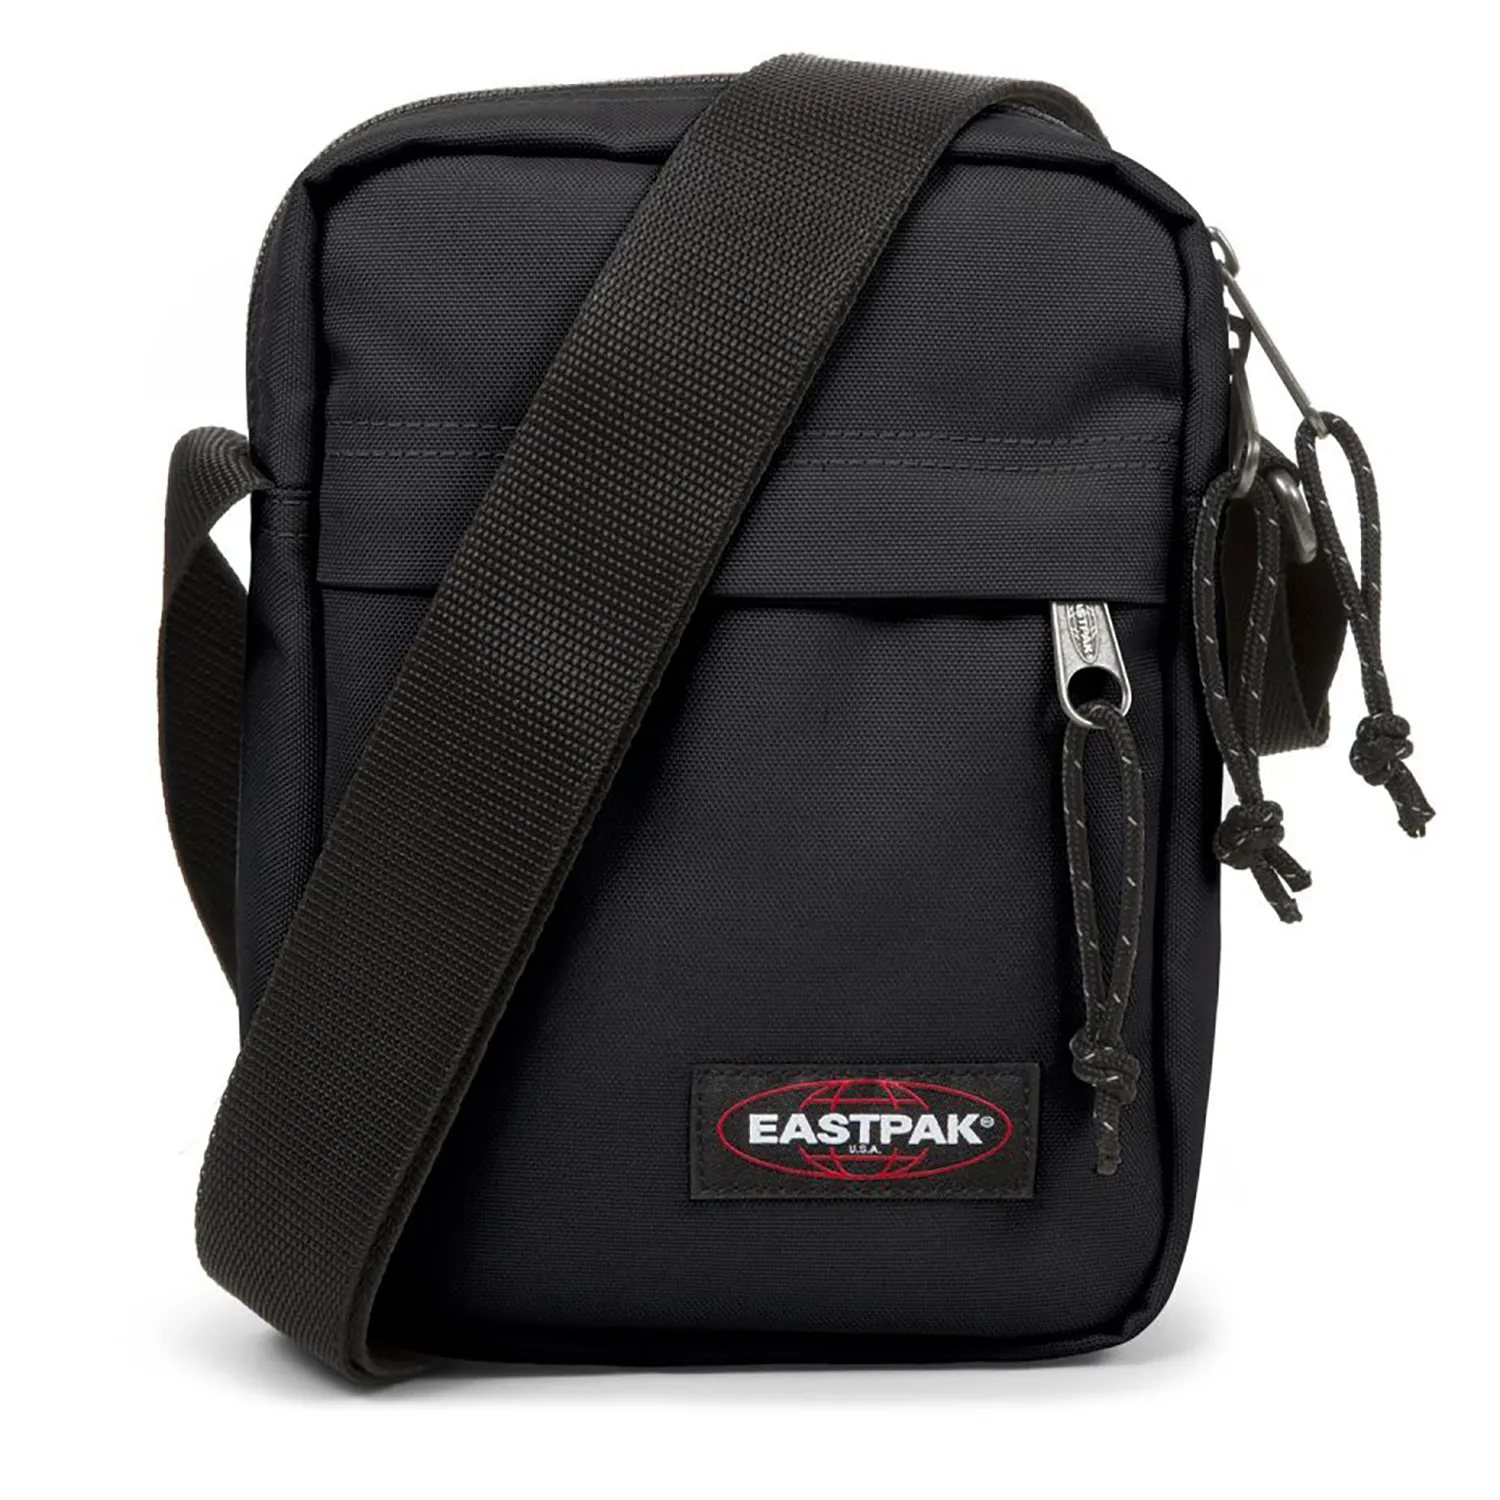 Lille Buddy taske Eastpak - Køb online